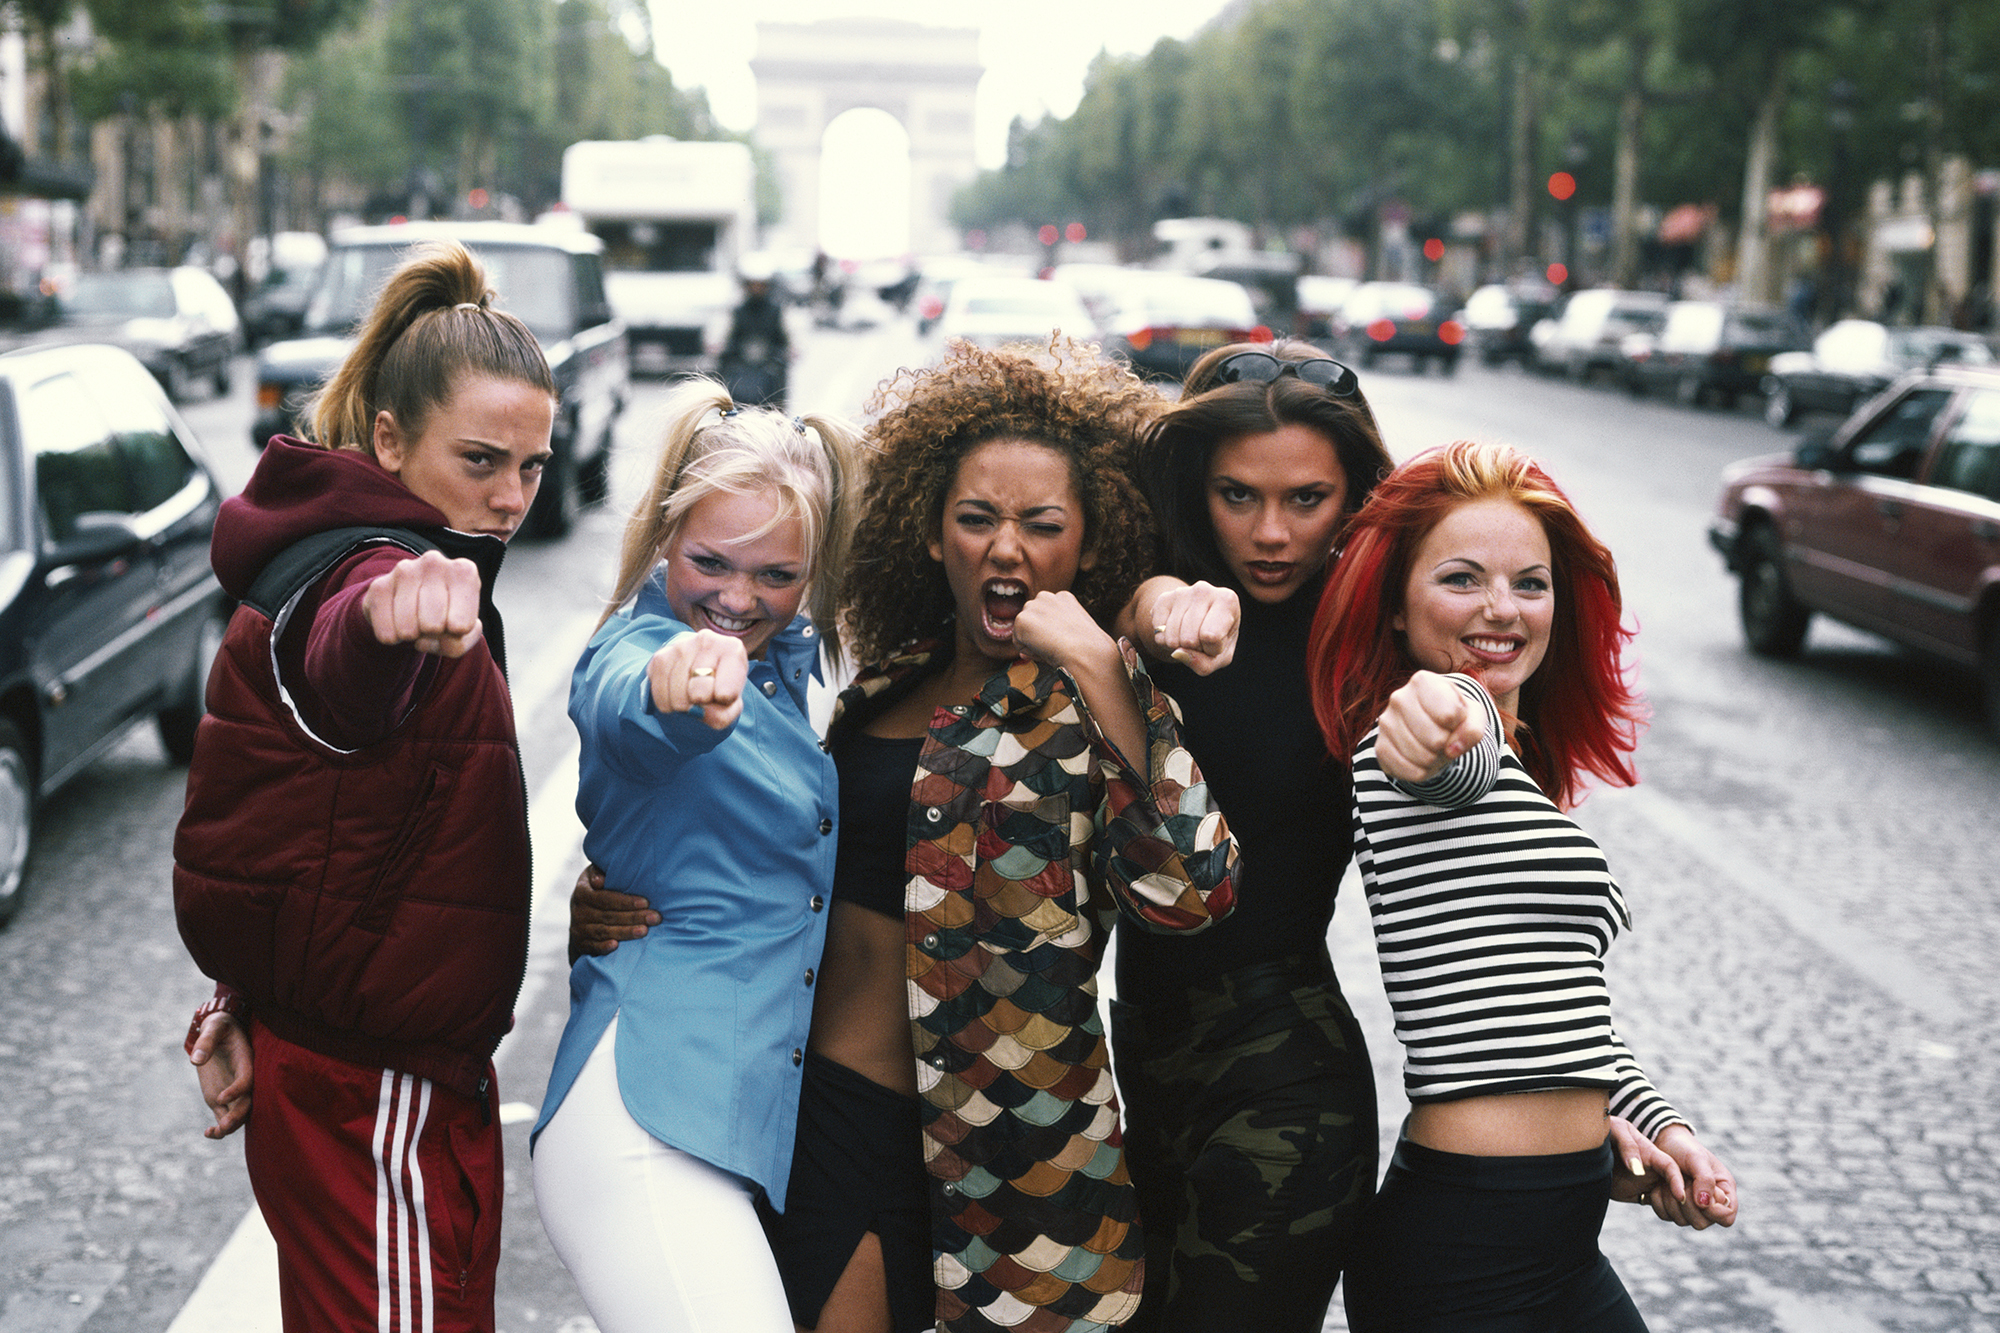 From left: Melanie Chisholm, Emma Bunton, Melanie Brown, Victoria Beckham, and Geri Halliwell in Paris on Sept. 1, 1996.